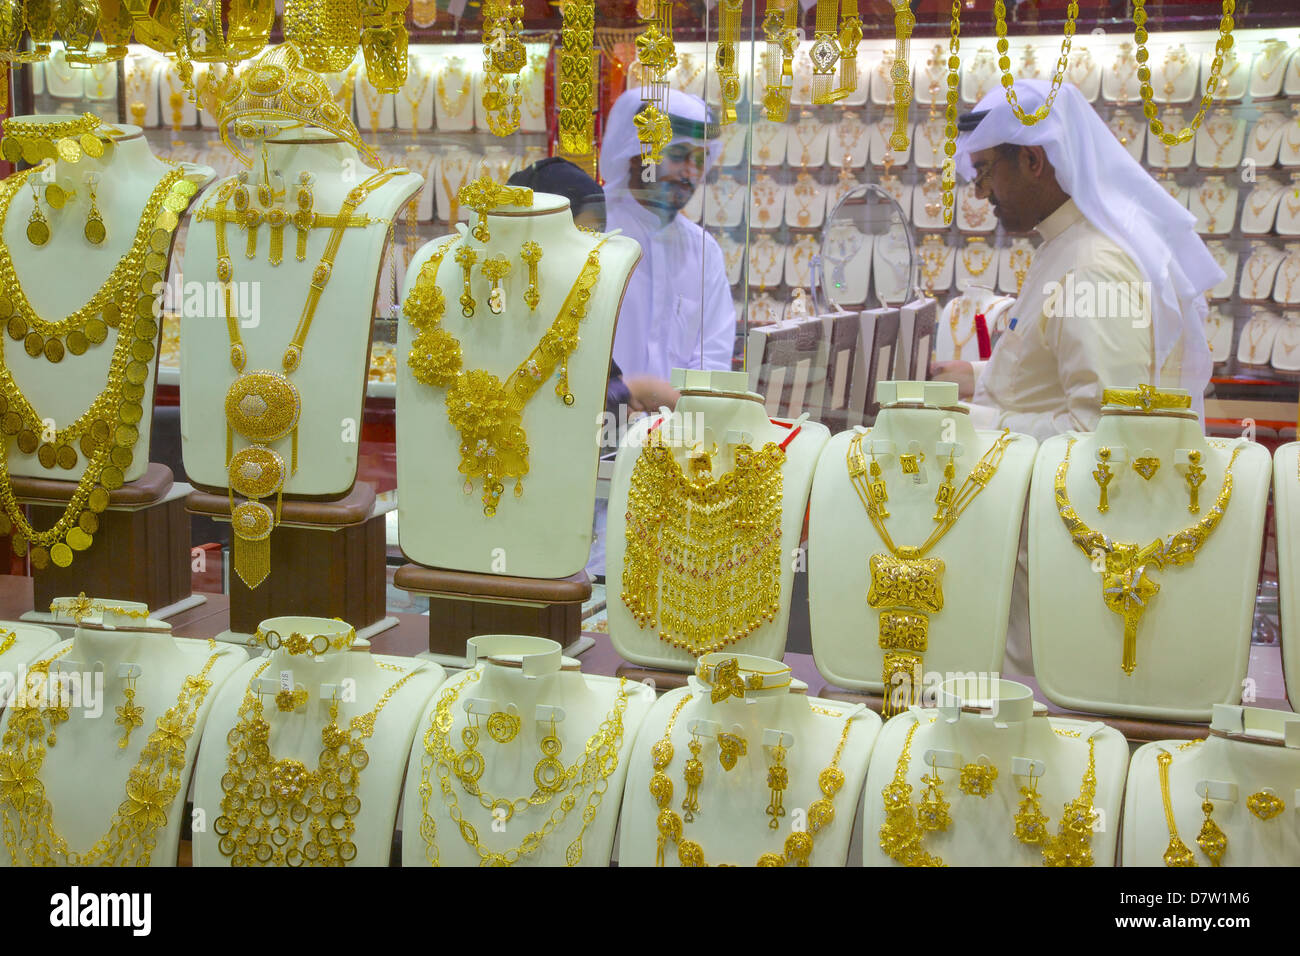 Gold Souk, Abu Dhabi, United Arab Emirates, Middle East Stock Photo - Alamy